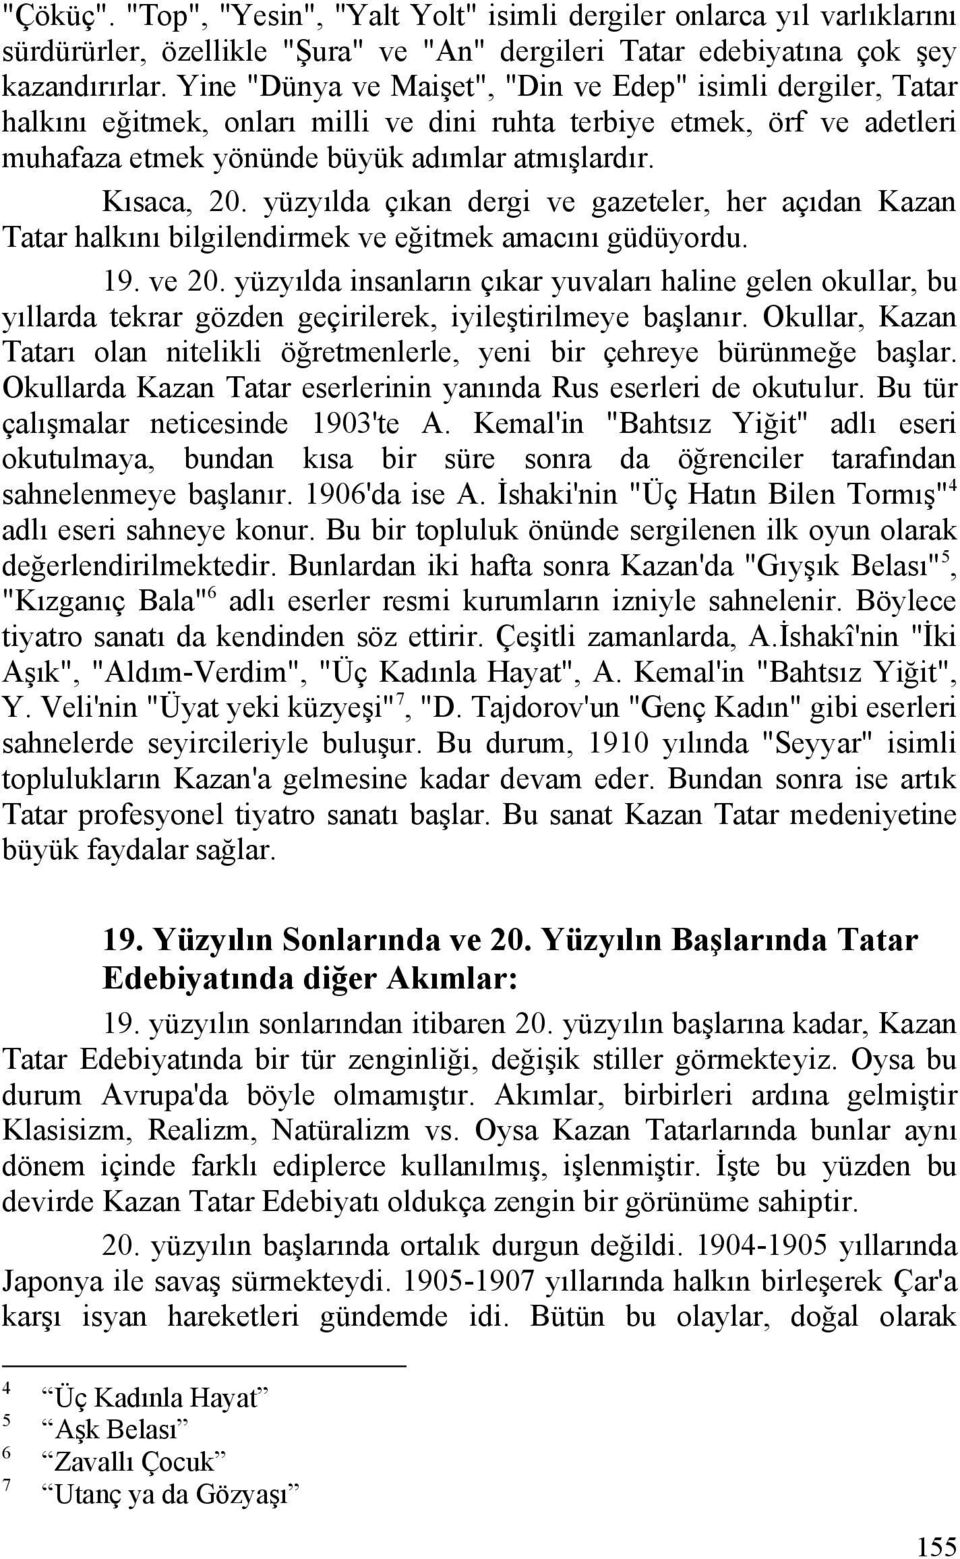 yüzyılda çıkan dergi ve gazeteler, her açıdan Kazan Tatar halkını bilgilendirmek ve eğitmek amacını güdüyordu. 19. ve 20.